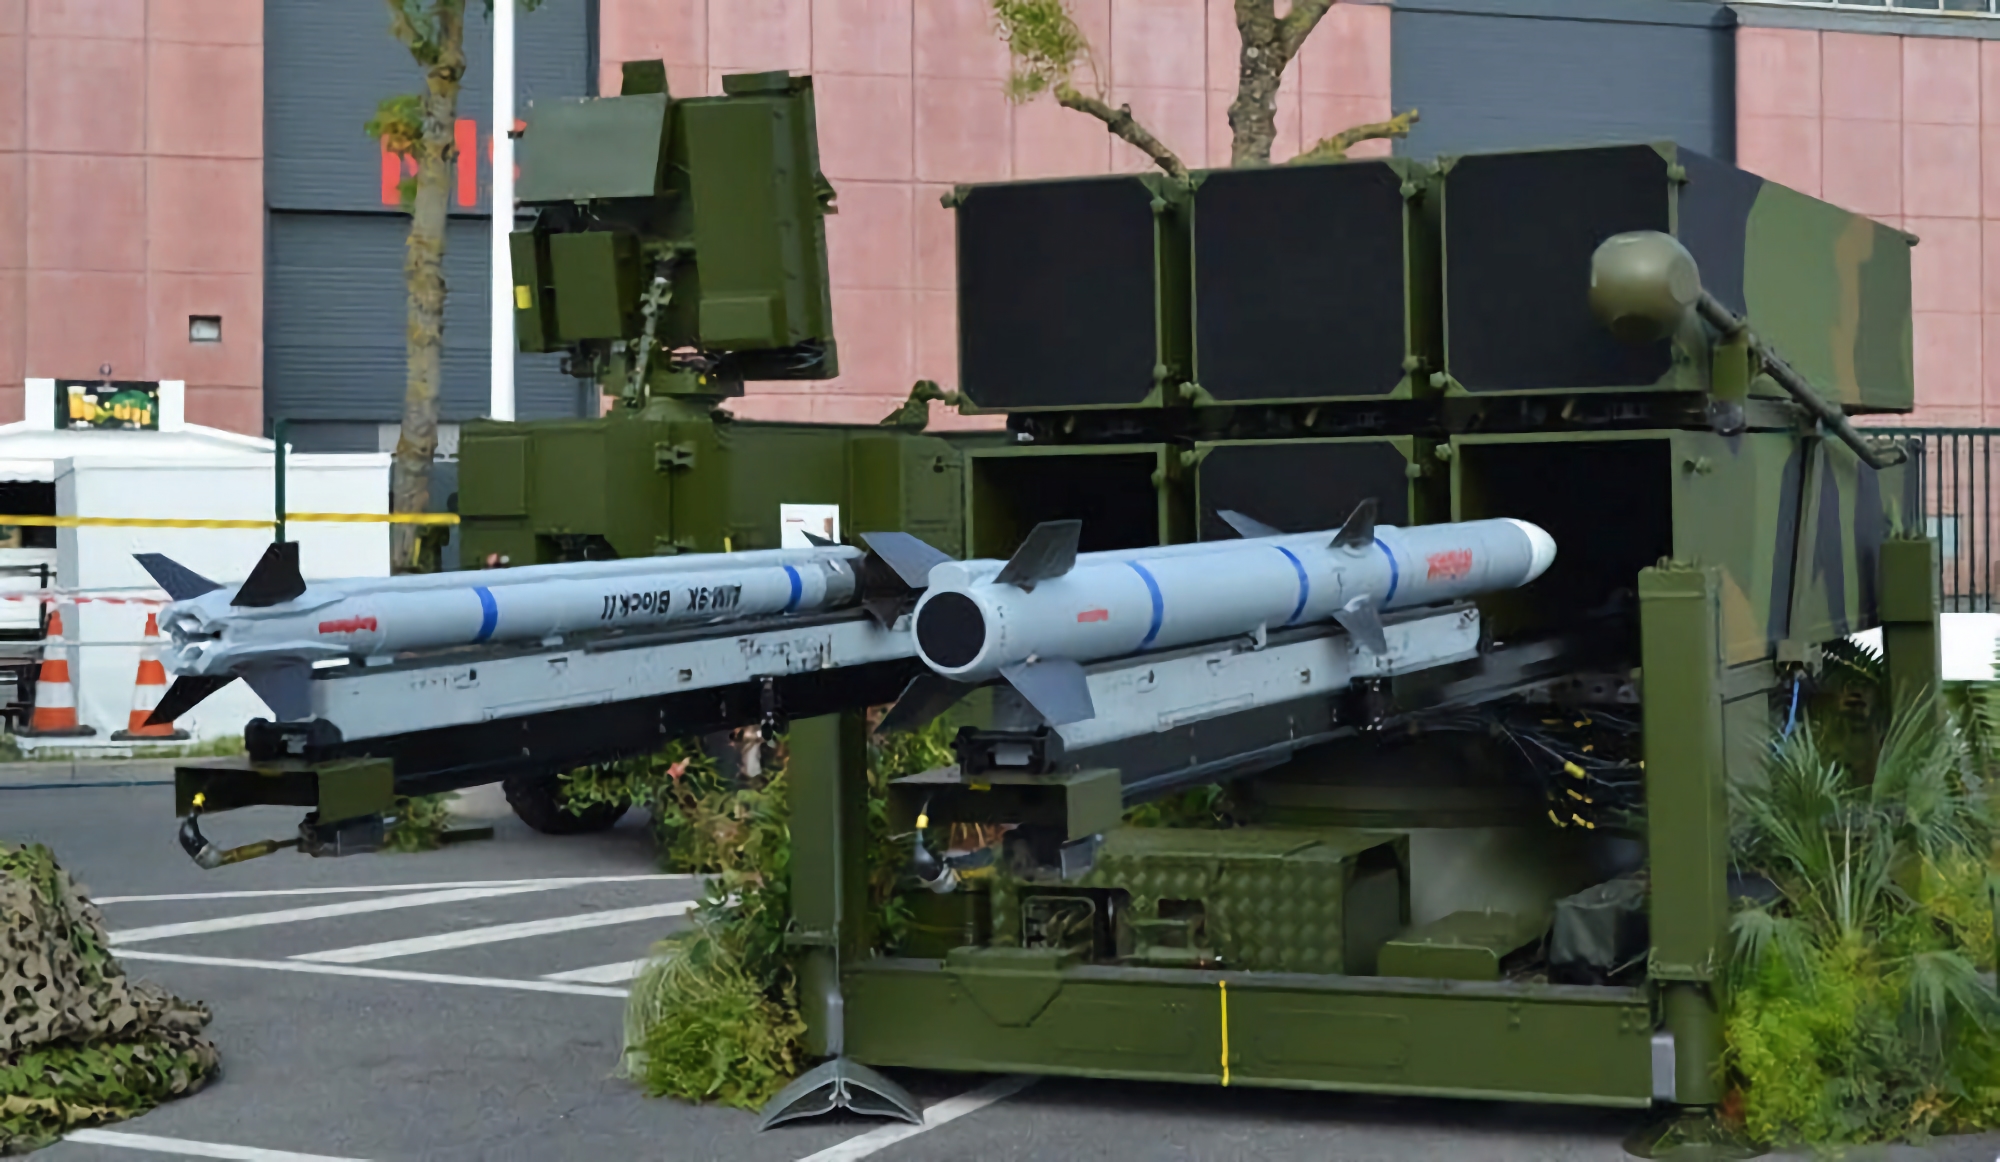 Die AFU hat NASAMS der 3. Generation mit AIM-9X Sidewinder-Raketen im Einsatz, der neuesten Version des Boden-Luft-Raketensystems.